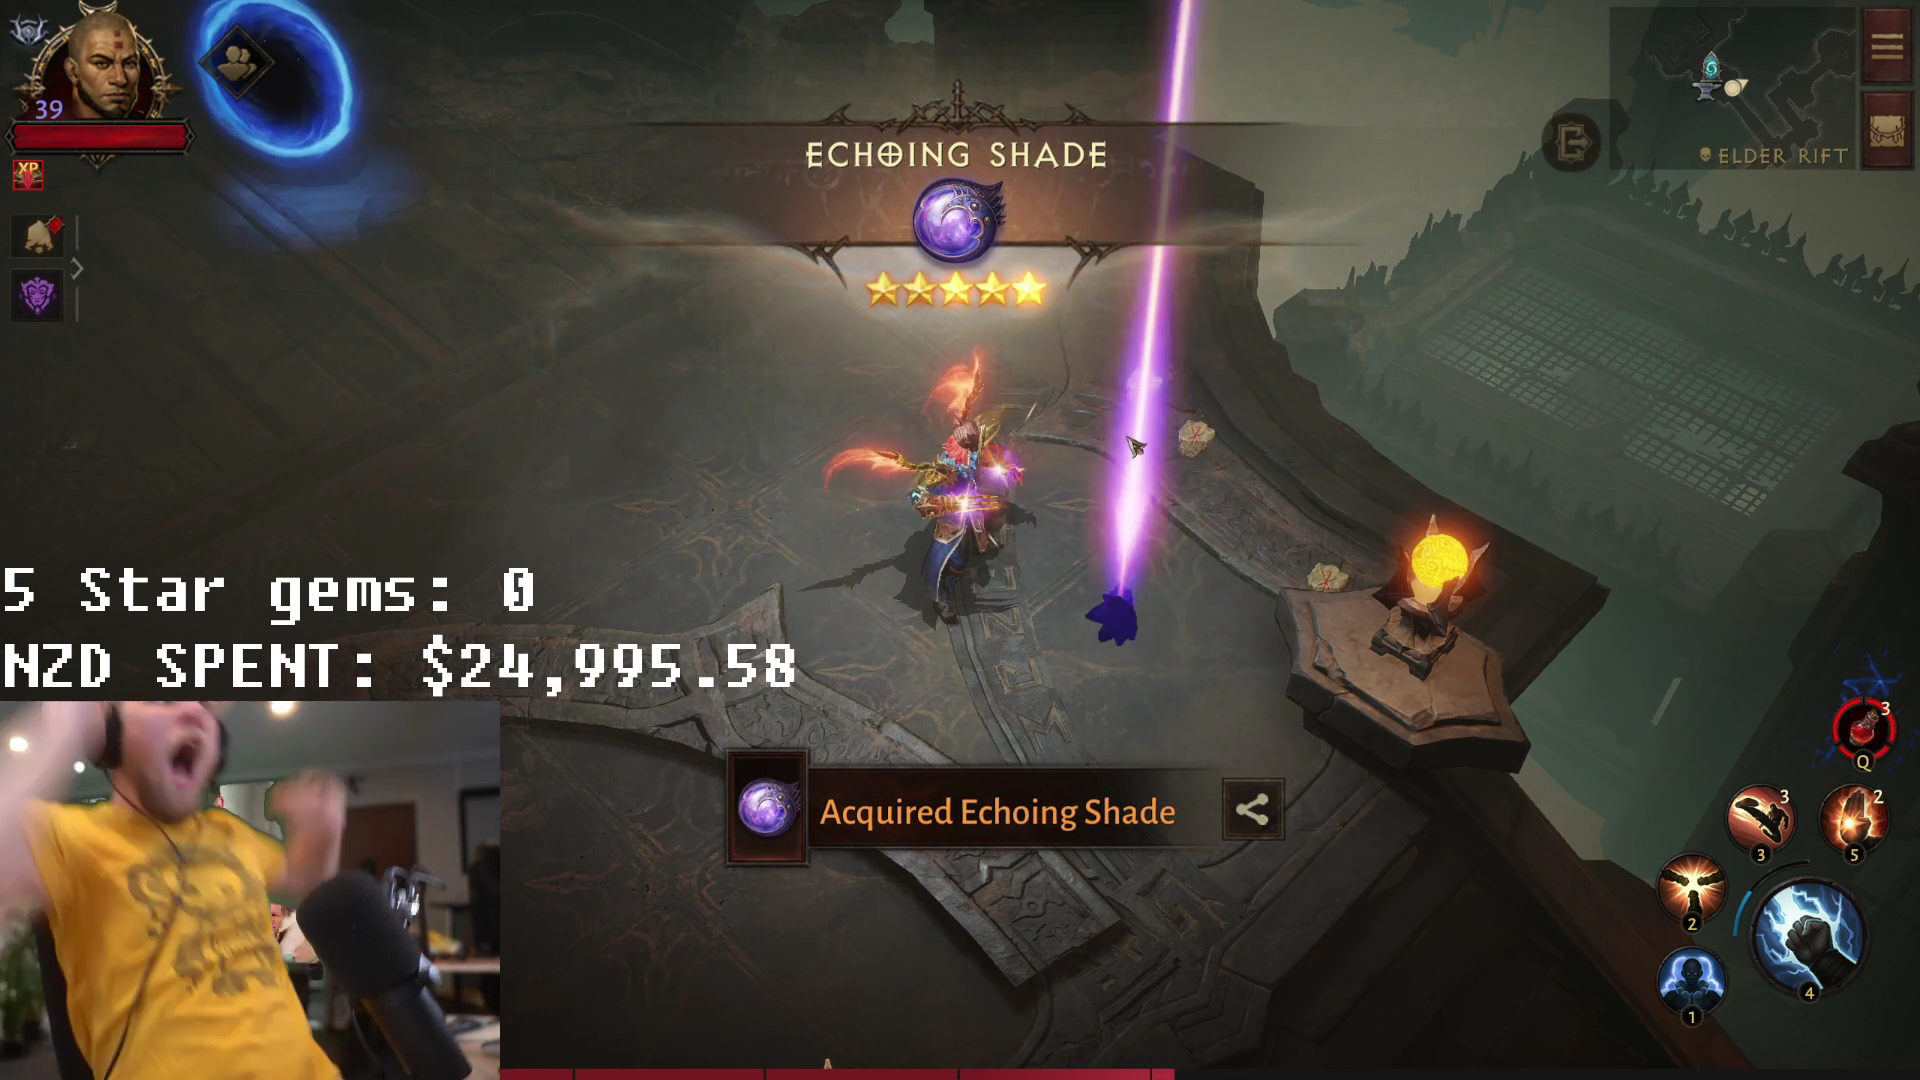 Gracz wydał 17 000 $, aby zdobyć pięciogwiazdkowy klejnot w Diablo Immortal i usunął grę